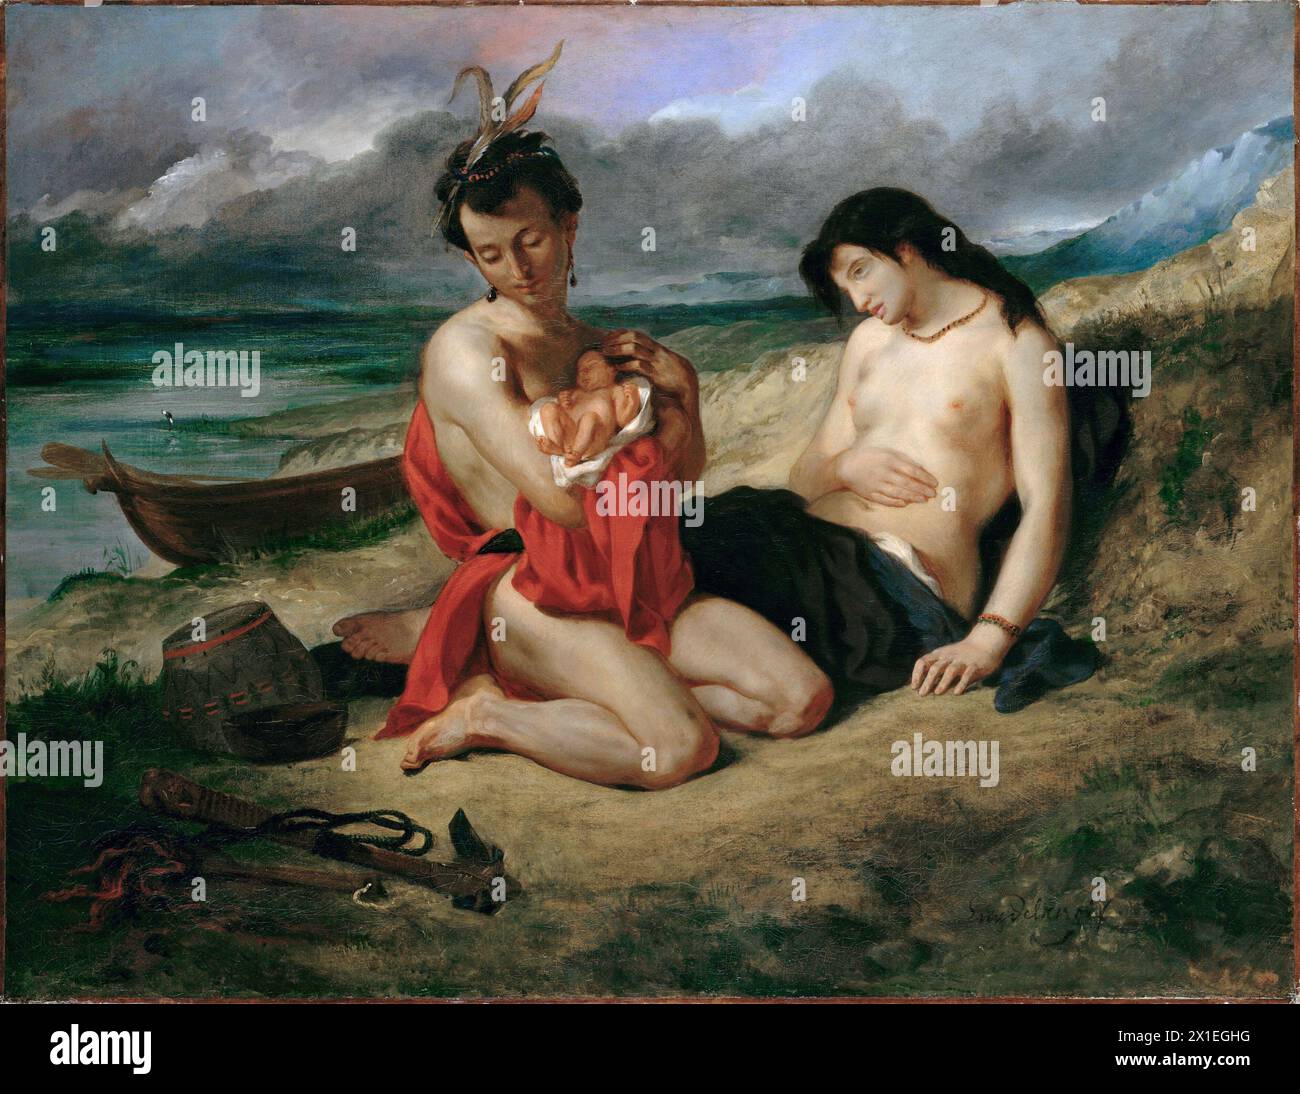 Il Natchez è un dipinto olio su tela eseguito circa. 1834–35 dell'artista romantico francese Eugène Delacroix. Raffigura una coppia di nativi americani con il loro bambino appena nato. Il dipinto è stato ispirato da un passaggio dell'Atala di Chateaubriand, Foto Stock